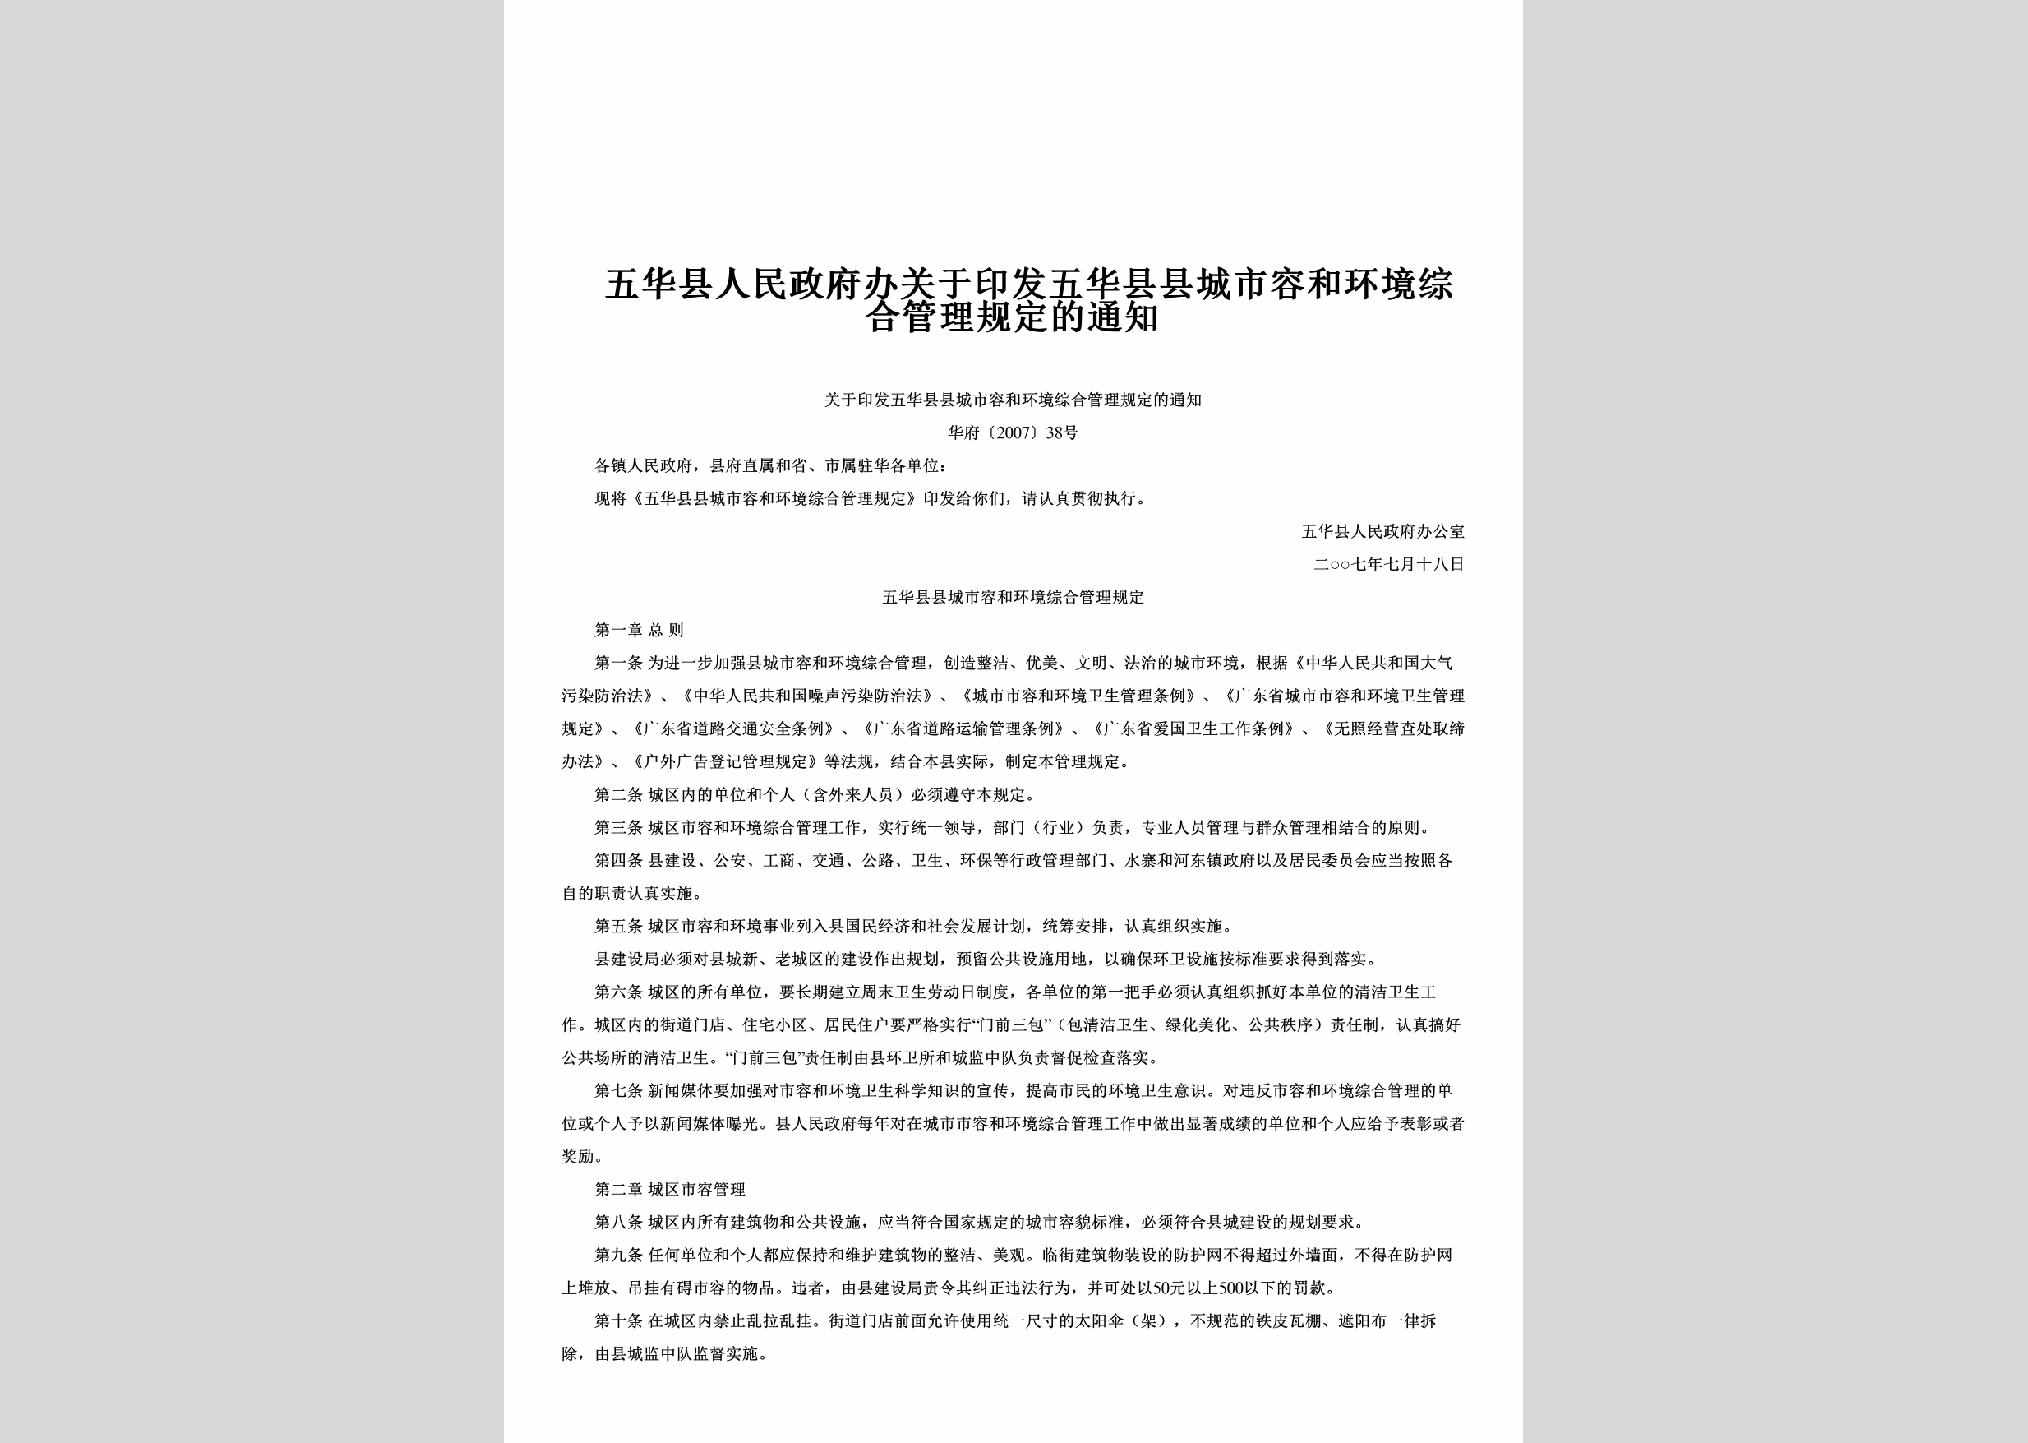 华府[2007]38号：关于印发五华县县城市容和环境综合管理规定的通知